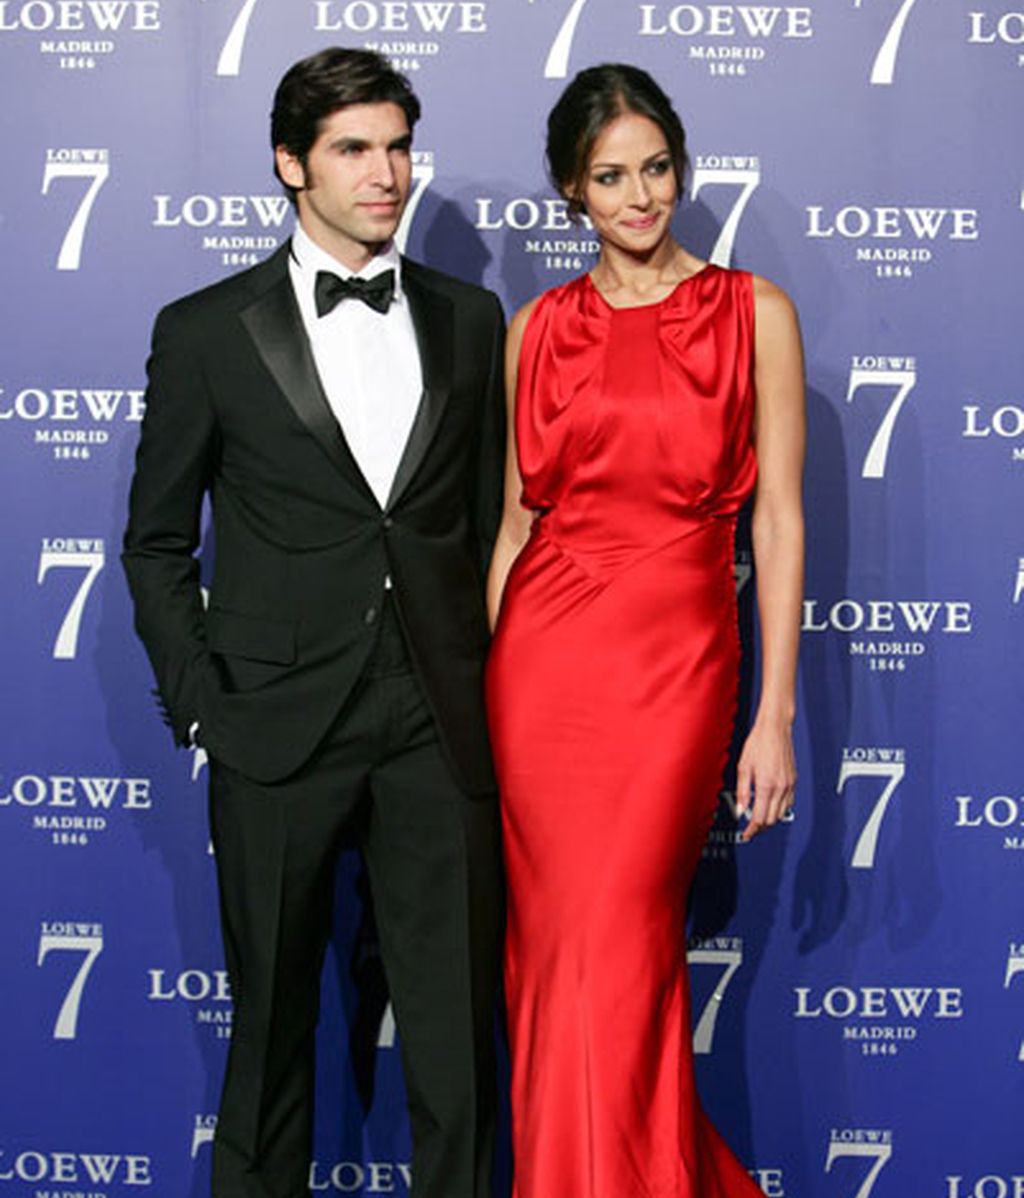 Cayetano y Eva, protagonistas para Loewe